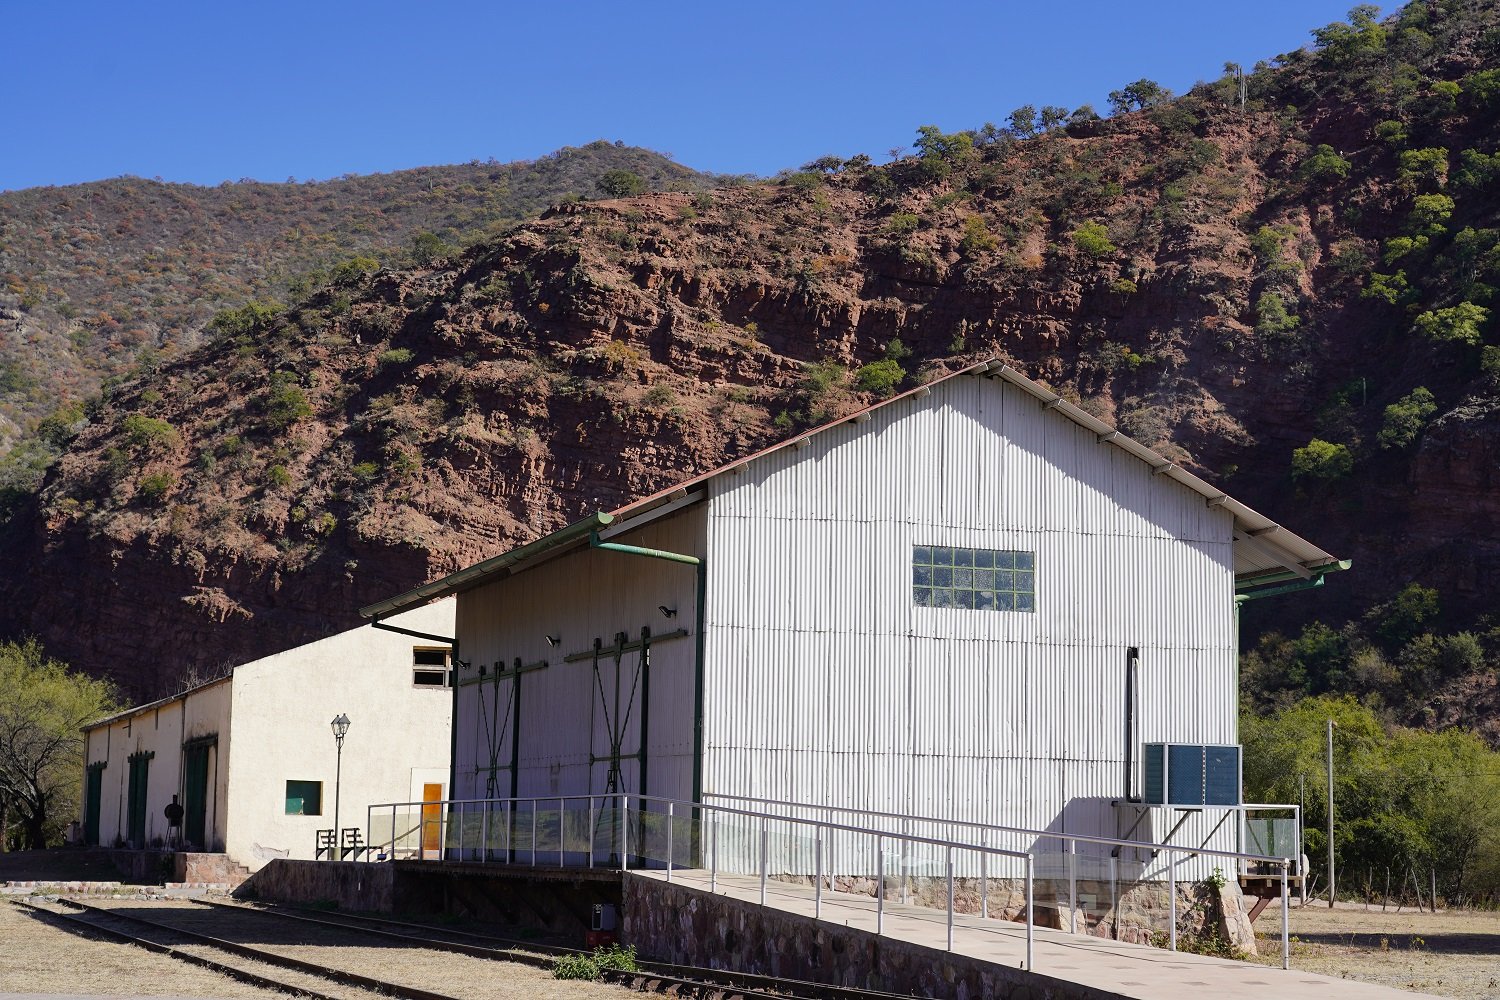 Galpão onde hoje funciona o Centro de Interpretación de la Quebrada de las Conchas (no dia de nossa visita estava fechado). Foto: Cesar Valdivieso